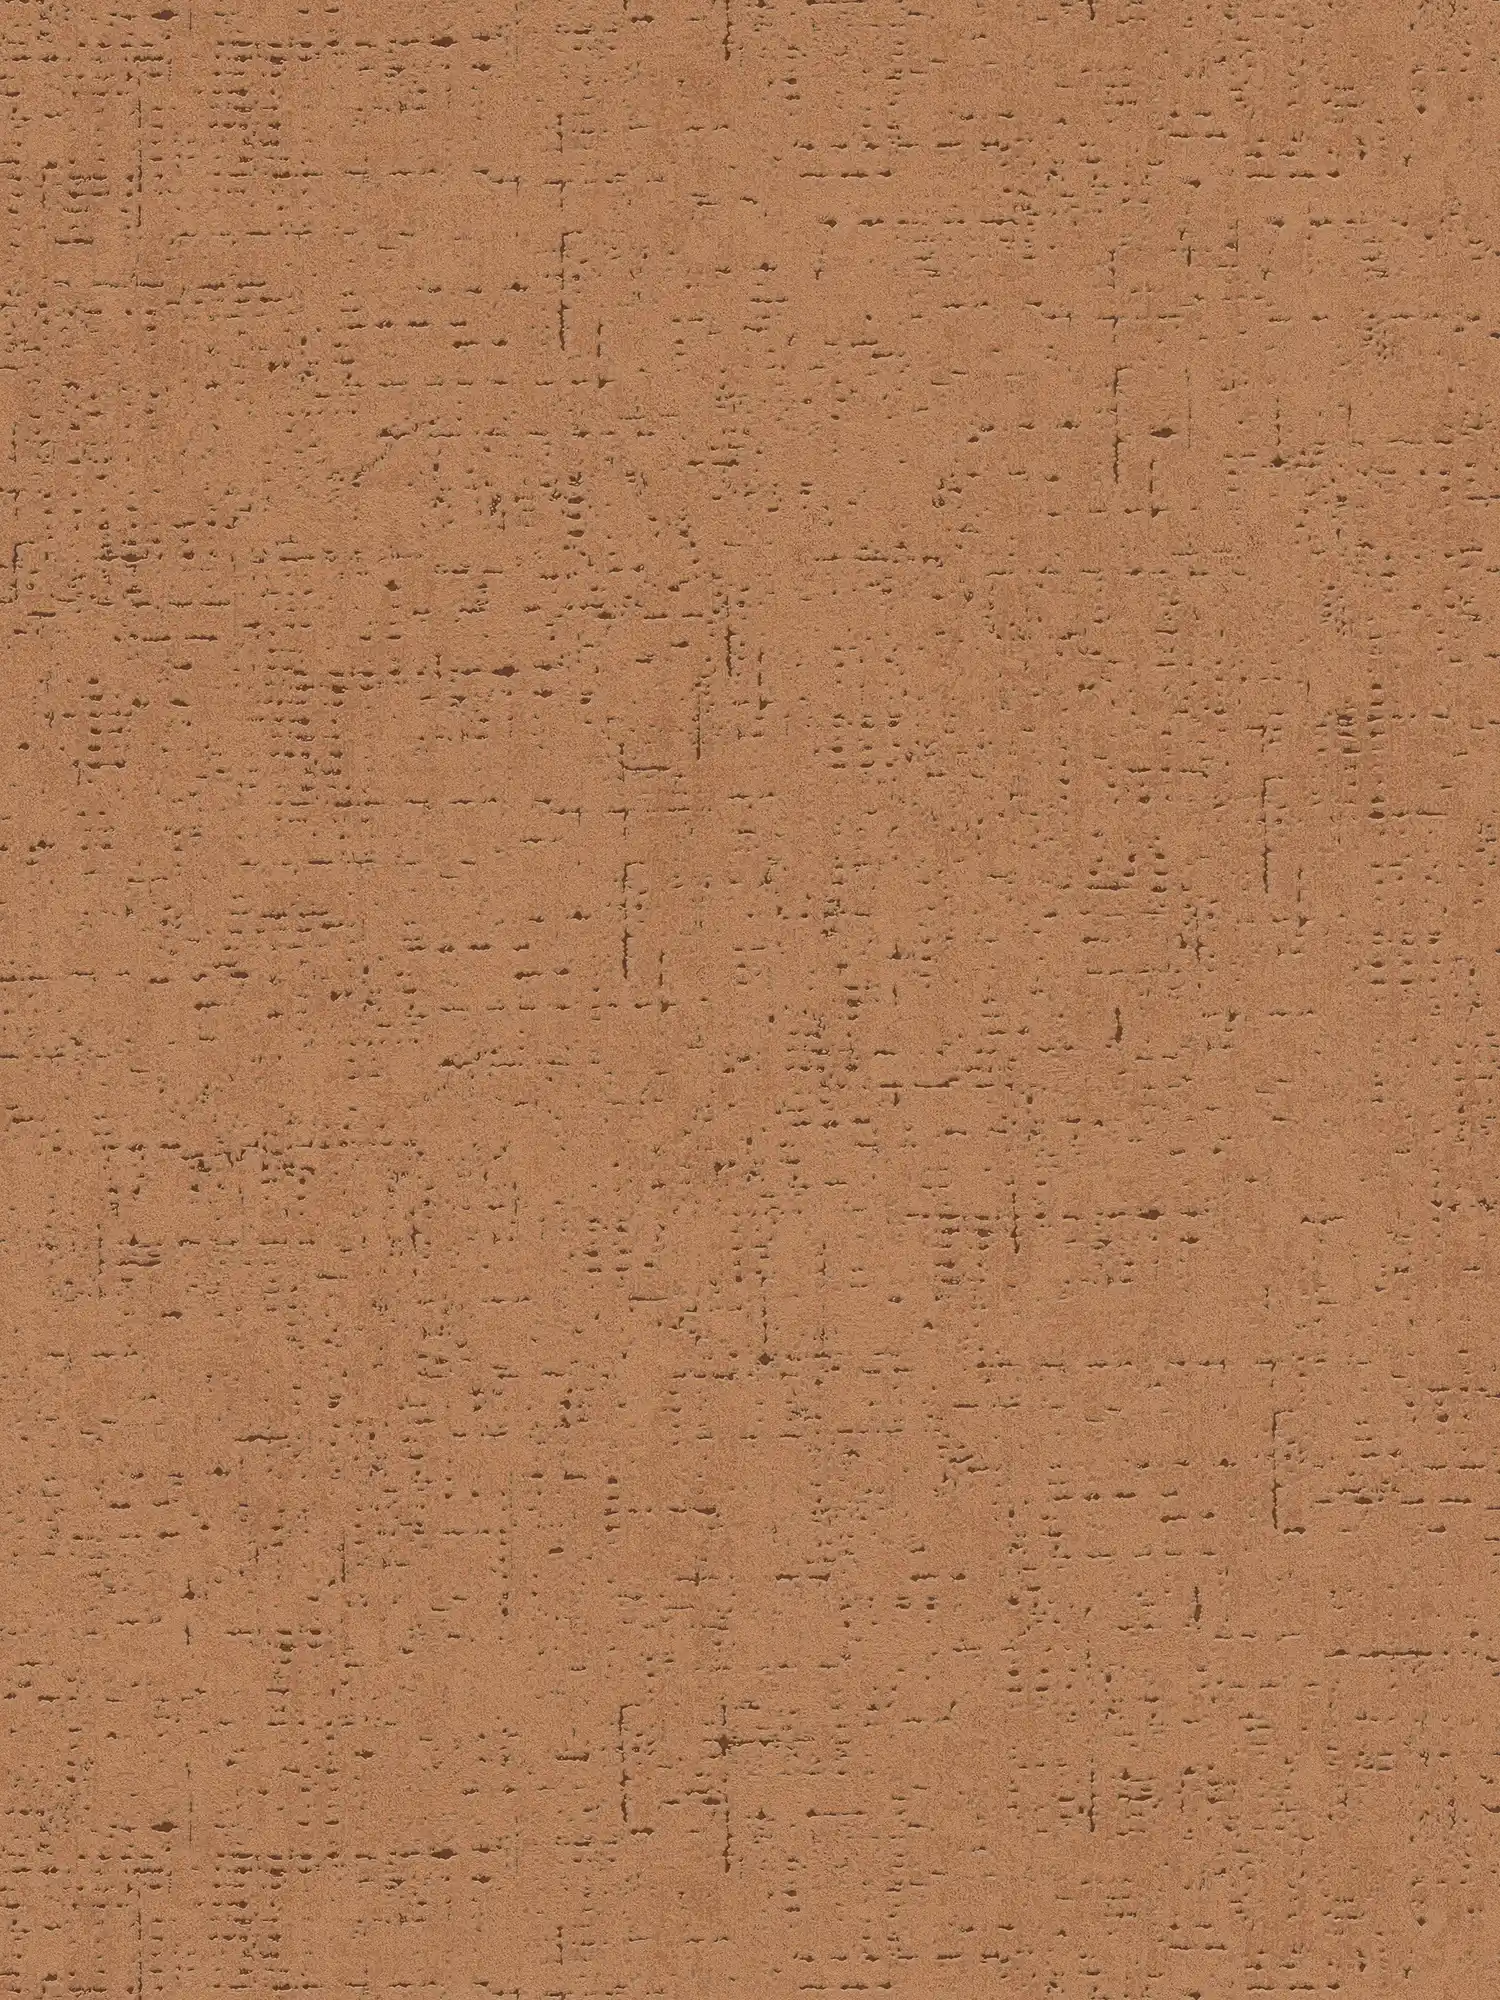 Eenheidsbehang met kurkmotief & structuurpatroon - bruin, oranje
